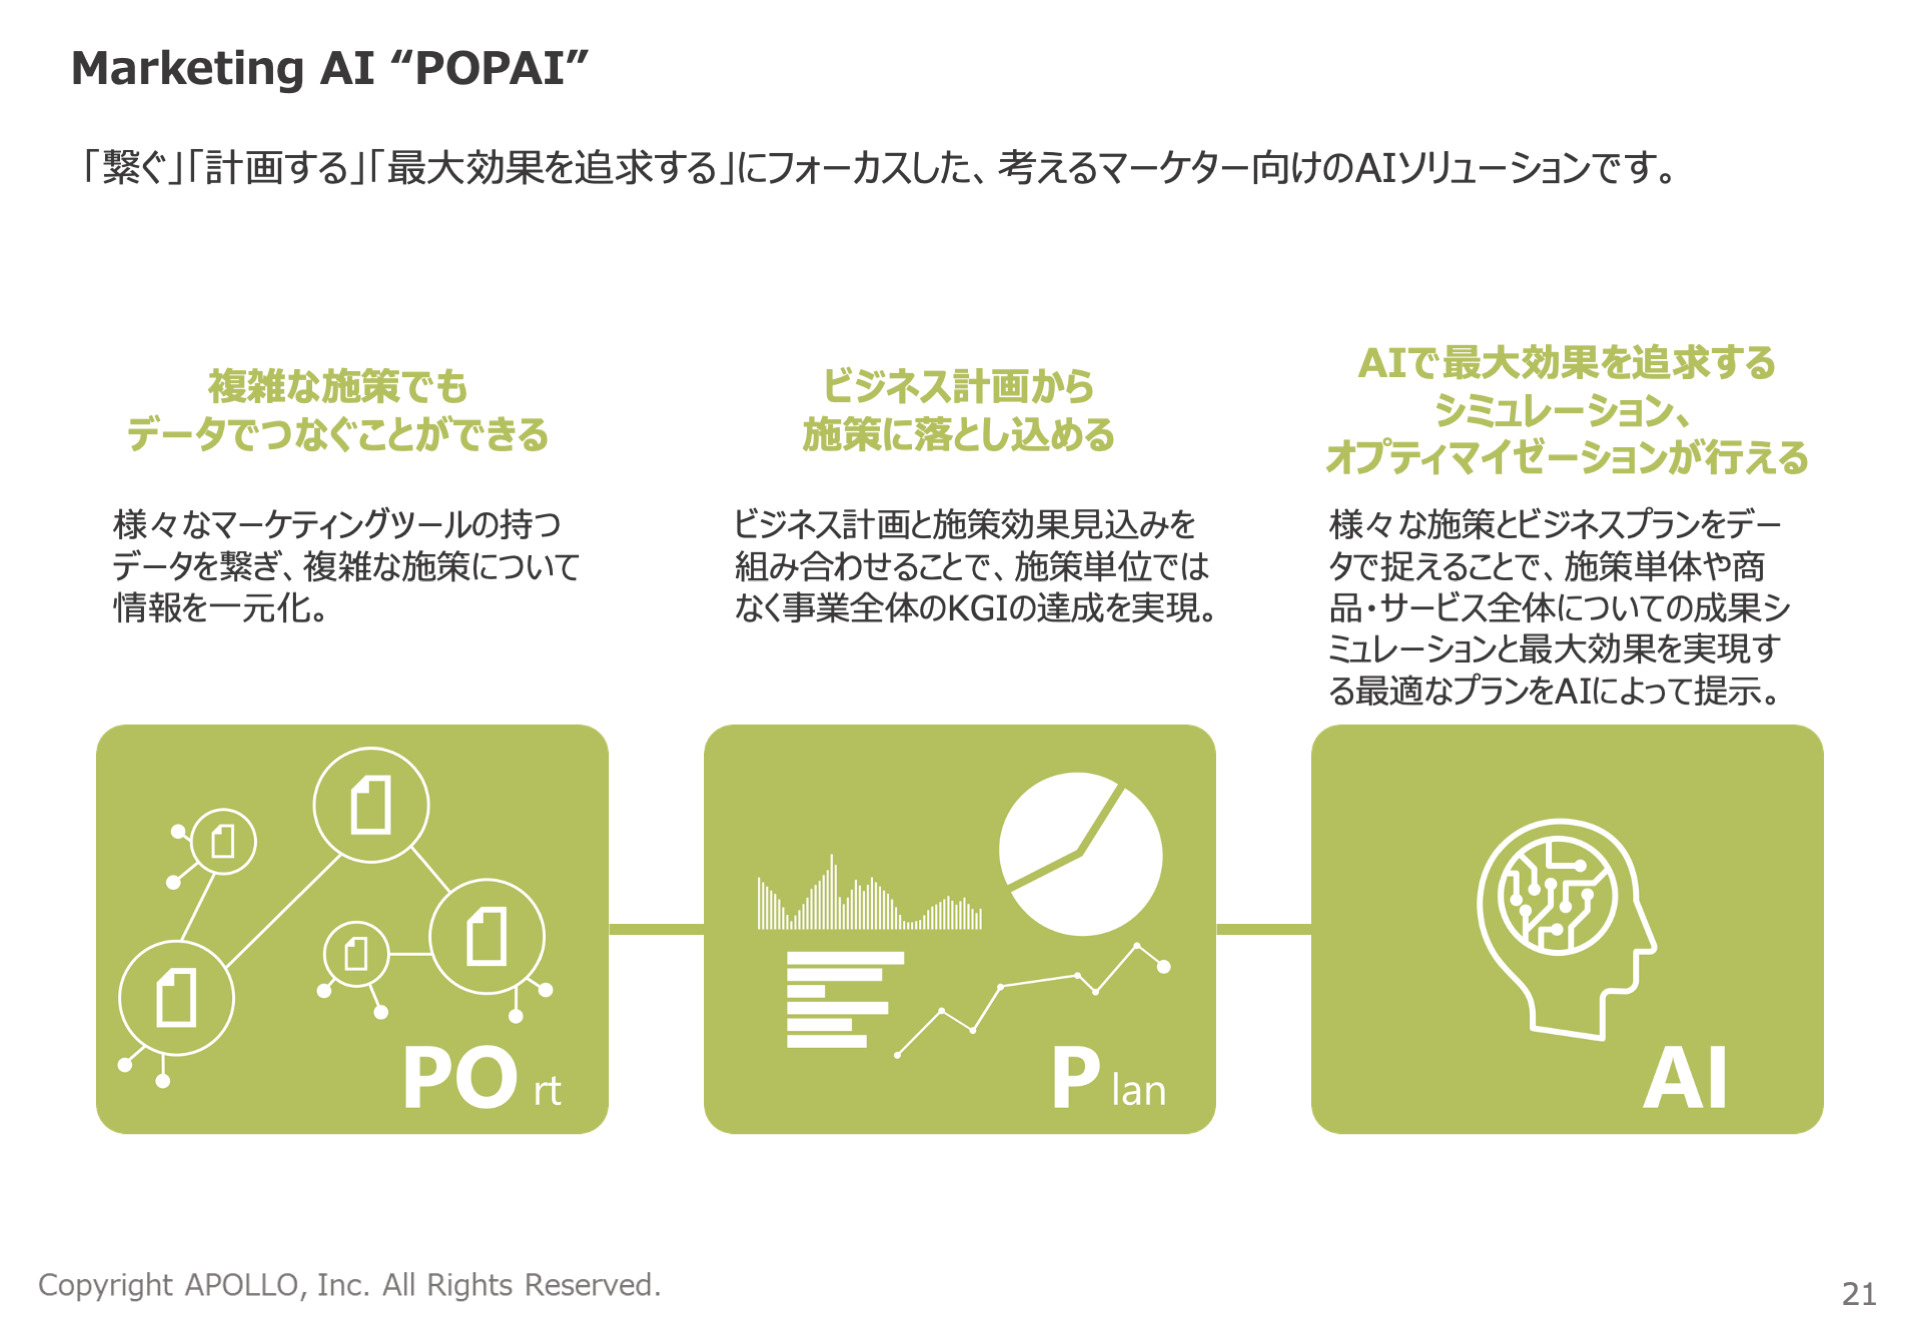 Port、Plan、AIの3つの観点からPOPAIを説明